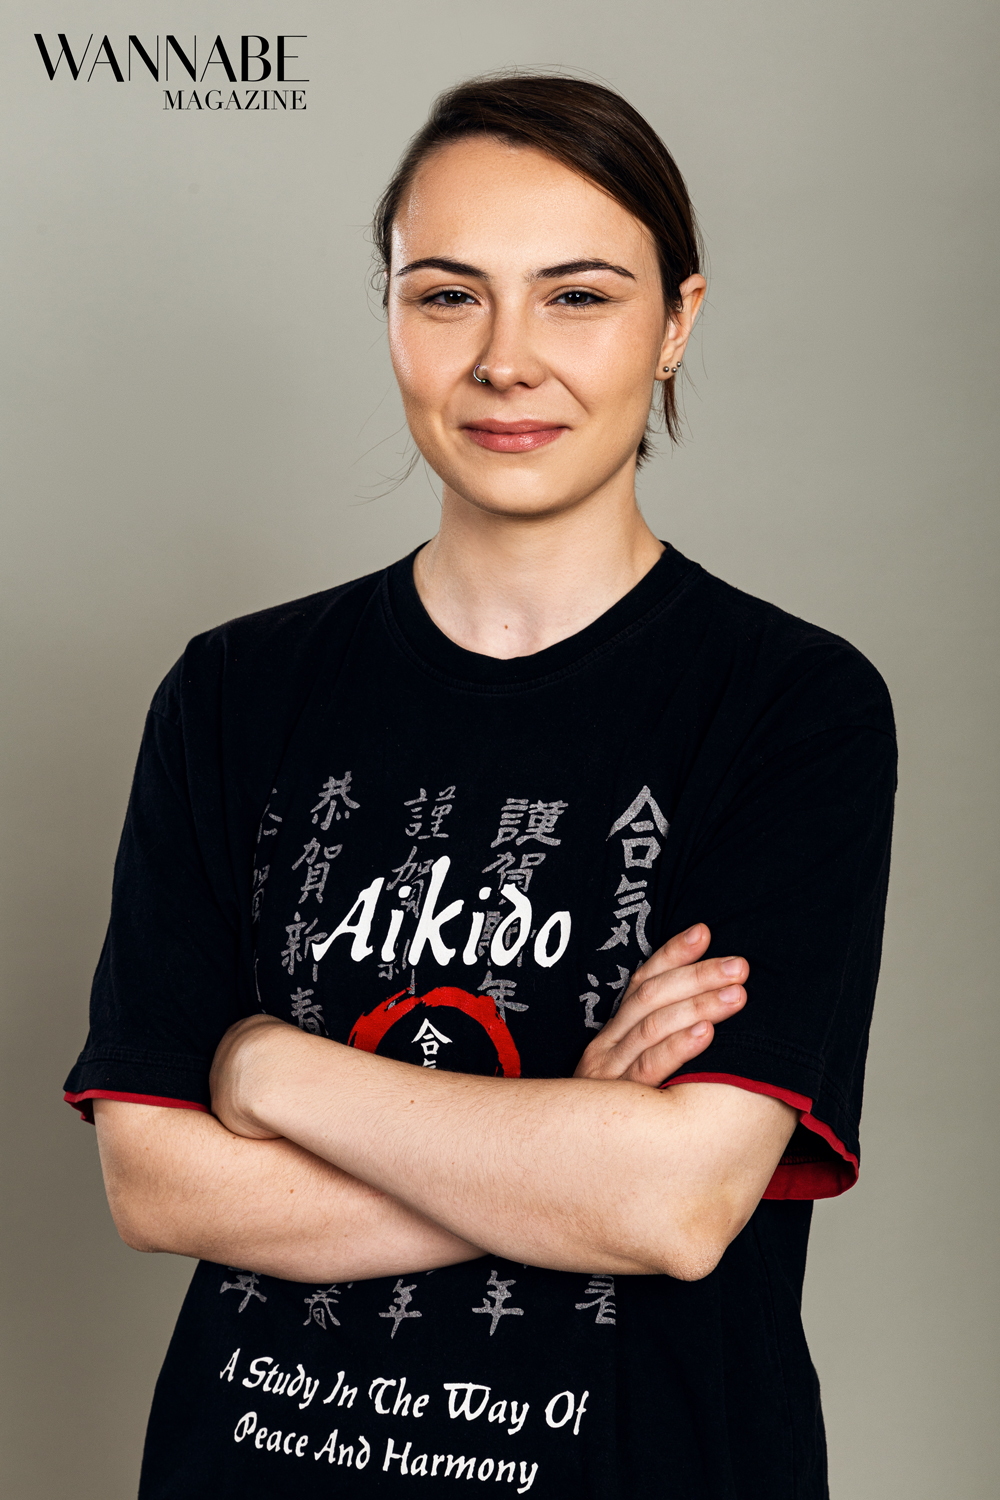 Marina i Aljosa aikido klub Tisa 2 Intervju: Marina i Aljoša nam objašnjavaju zašto svaka žena treba da zna aikido